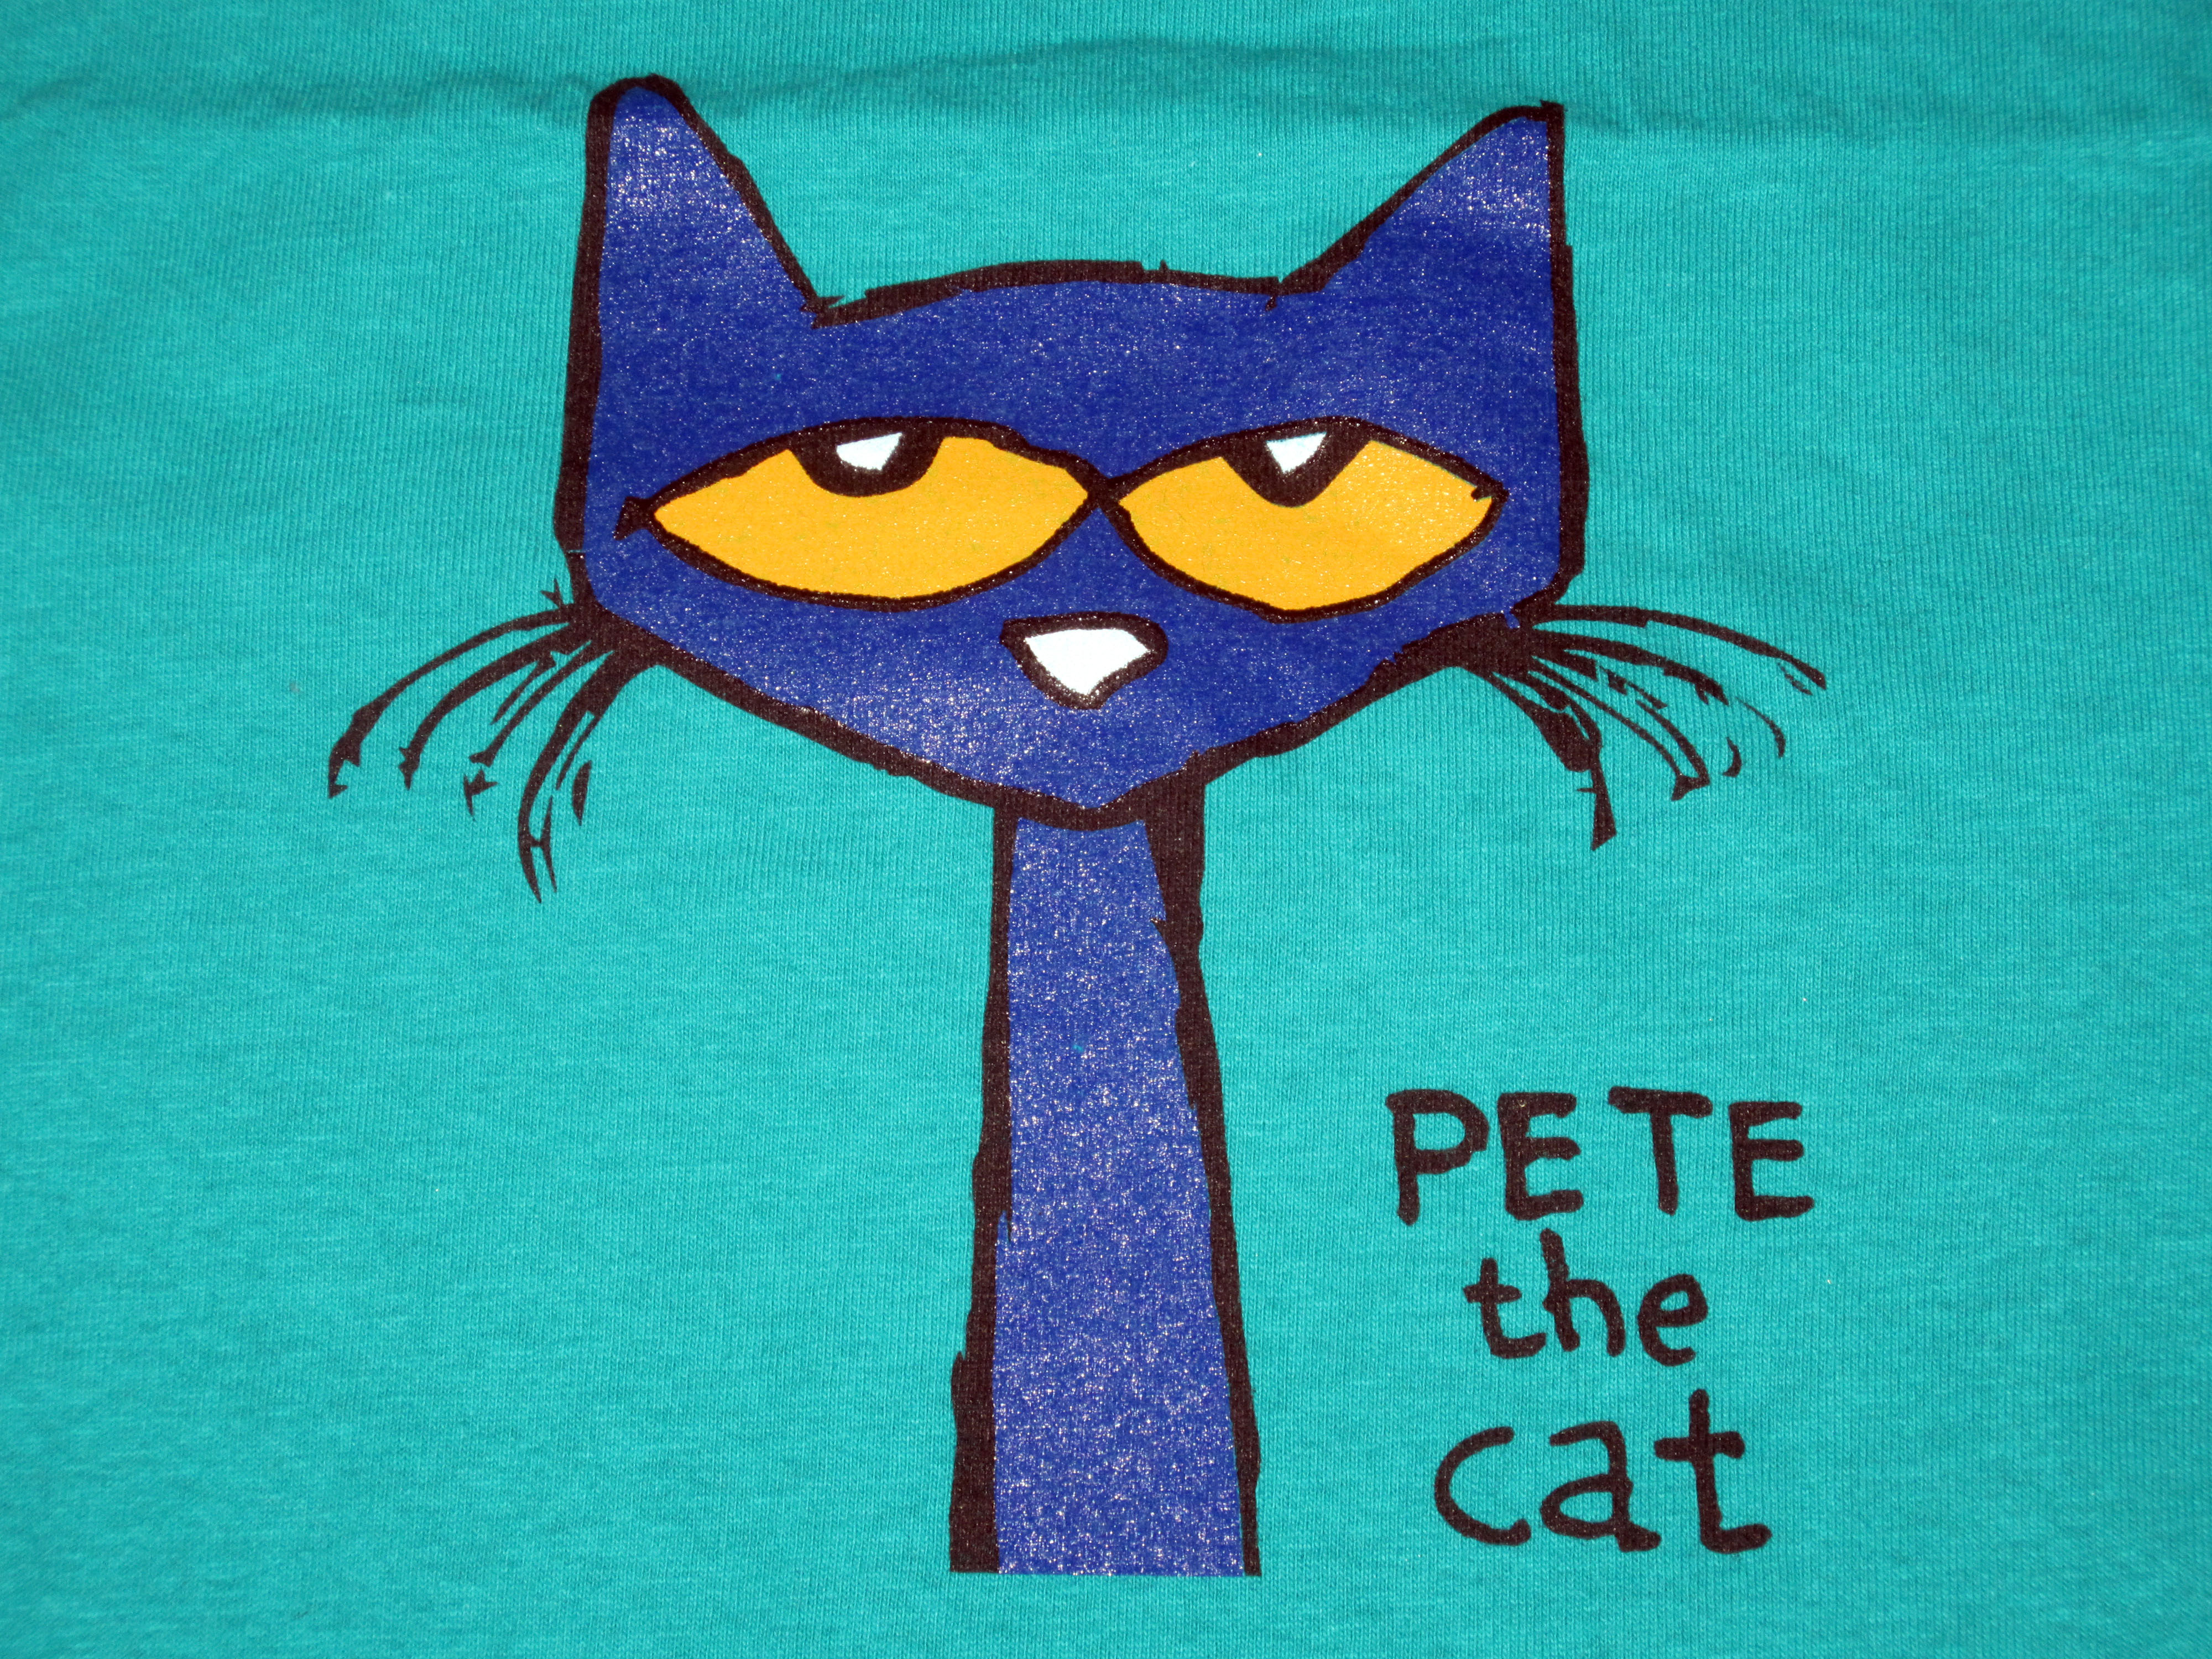 pete the cat talent show trouble